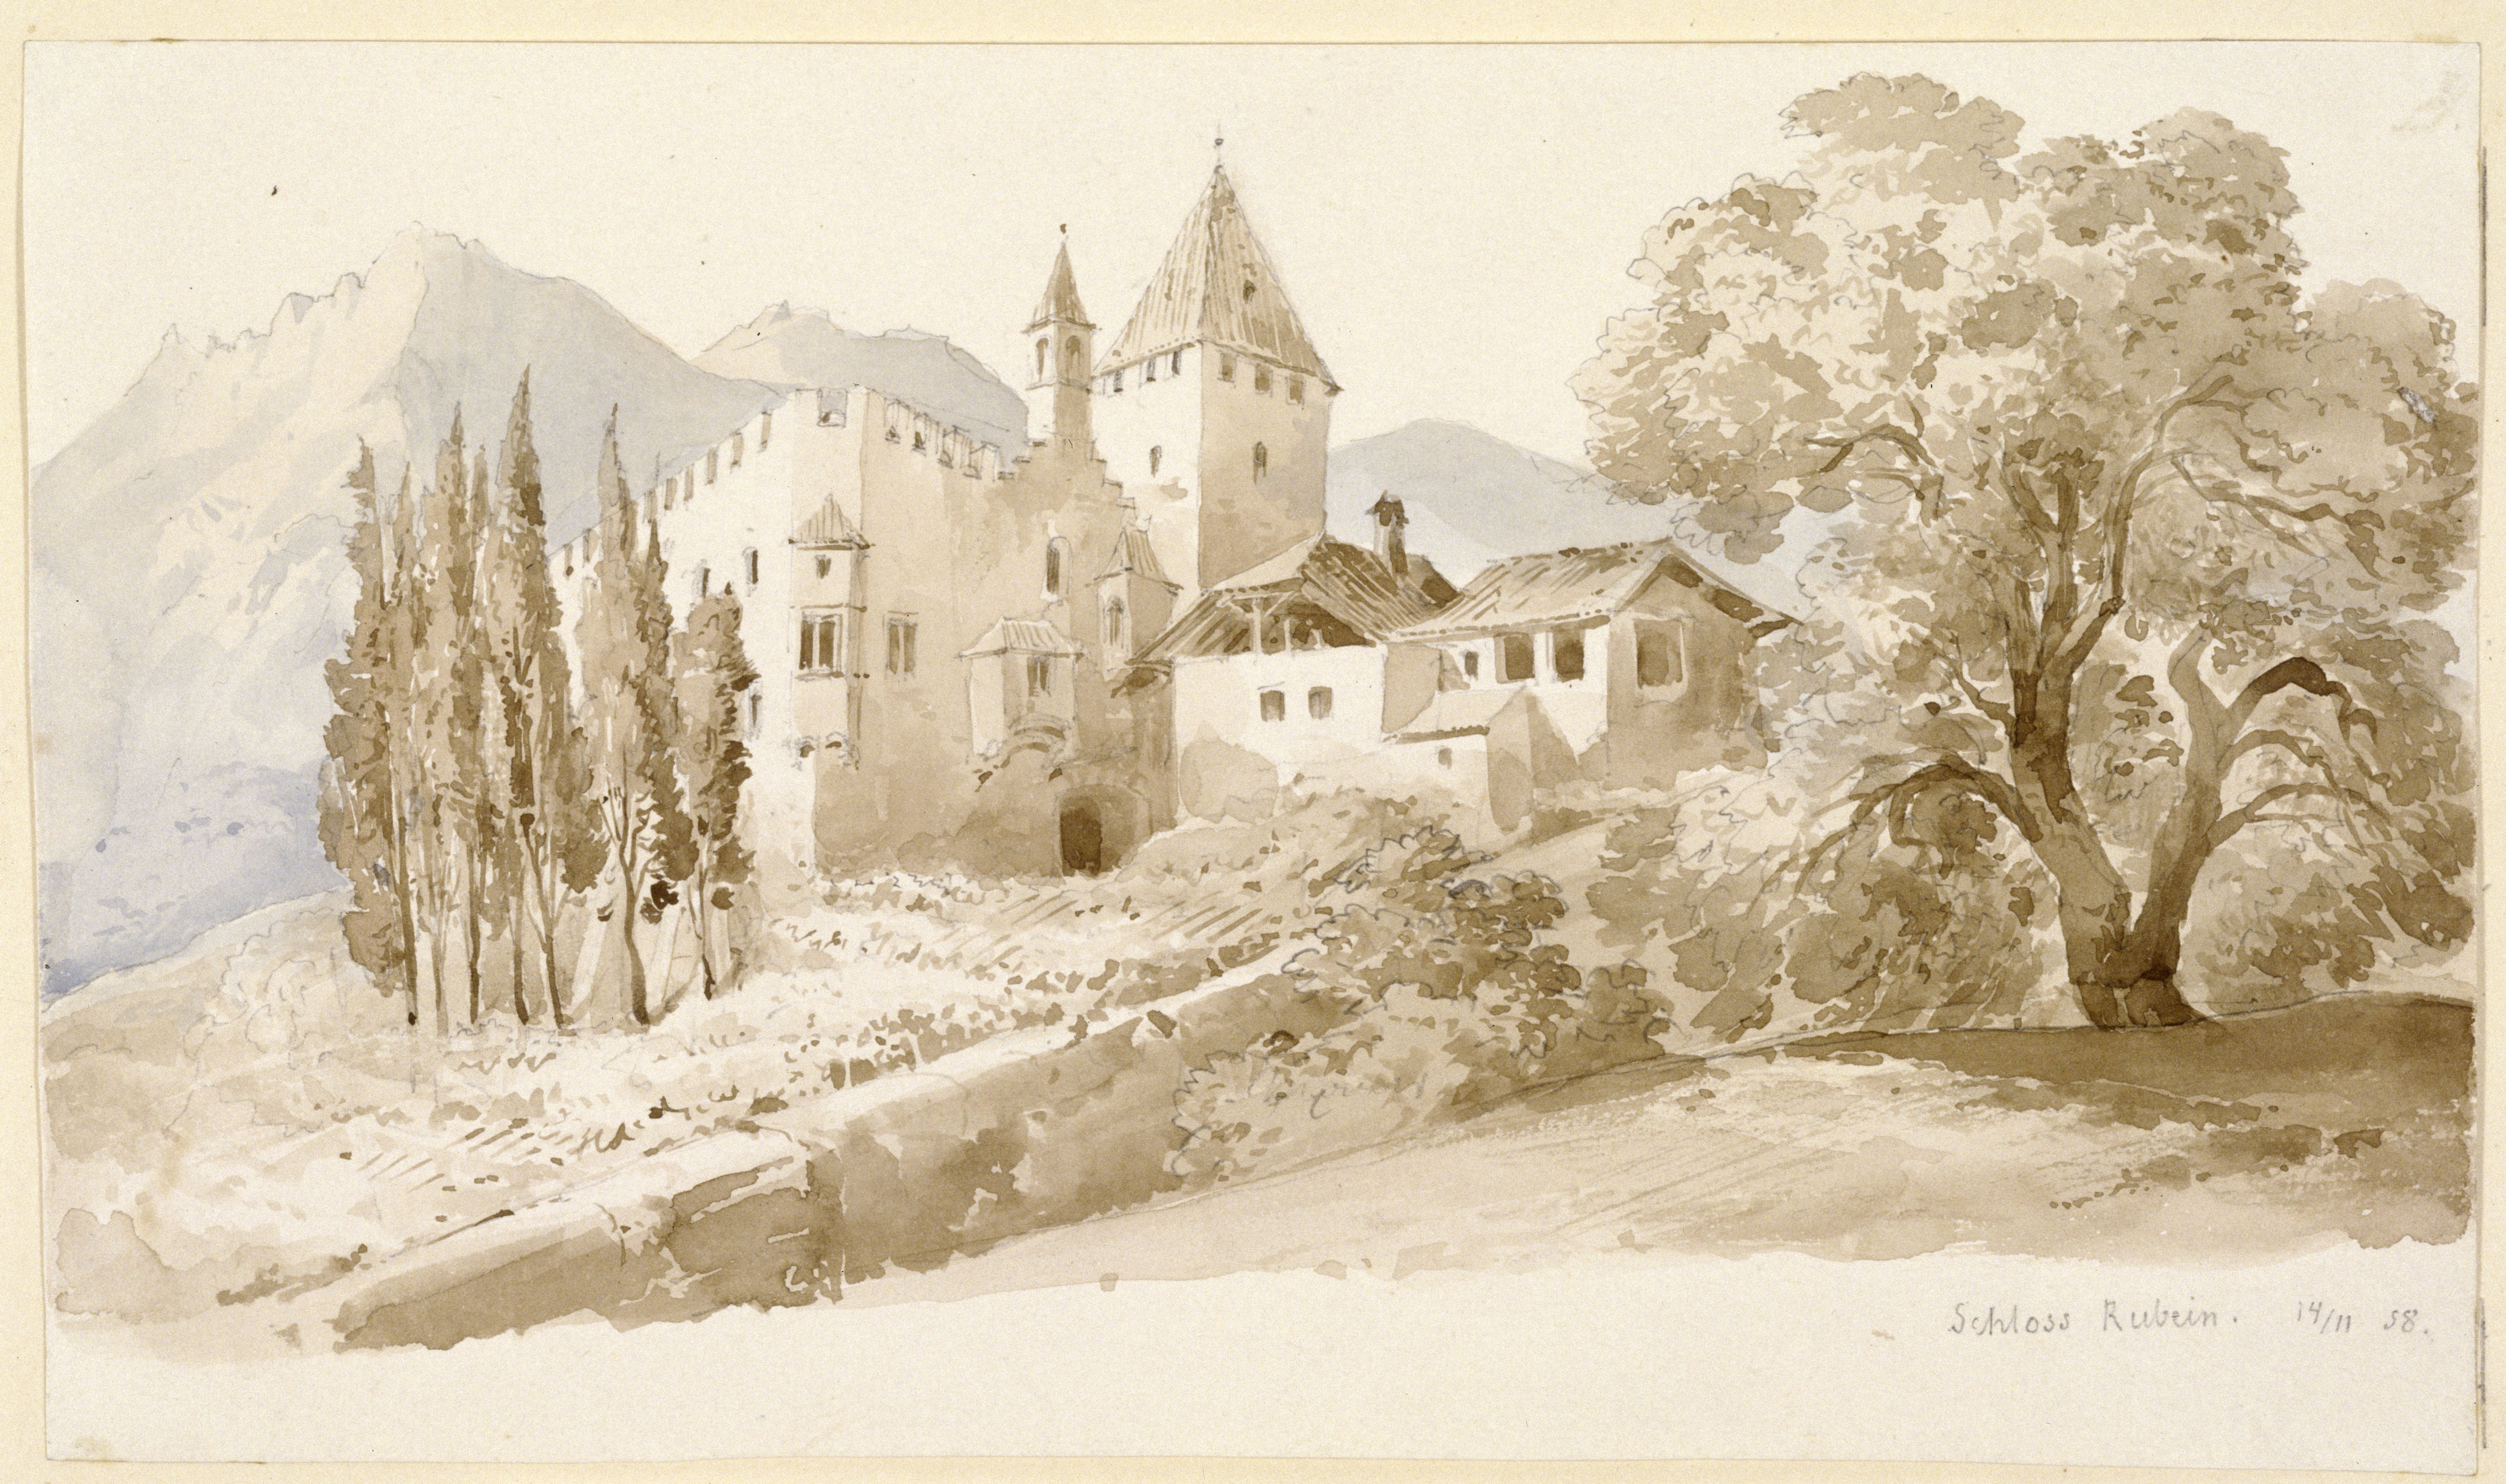 Stüler, Friedrich August: Schloss Rubein in Meran, 1858, SPSG, GK II (5) 3342. (Stiftung Preußische Schlösser und Gärten Berlin-Brandenburg CC BY-NC-SA)